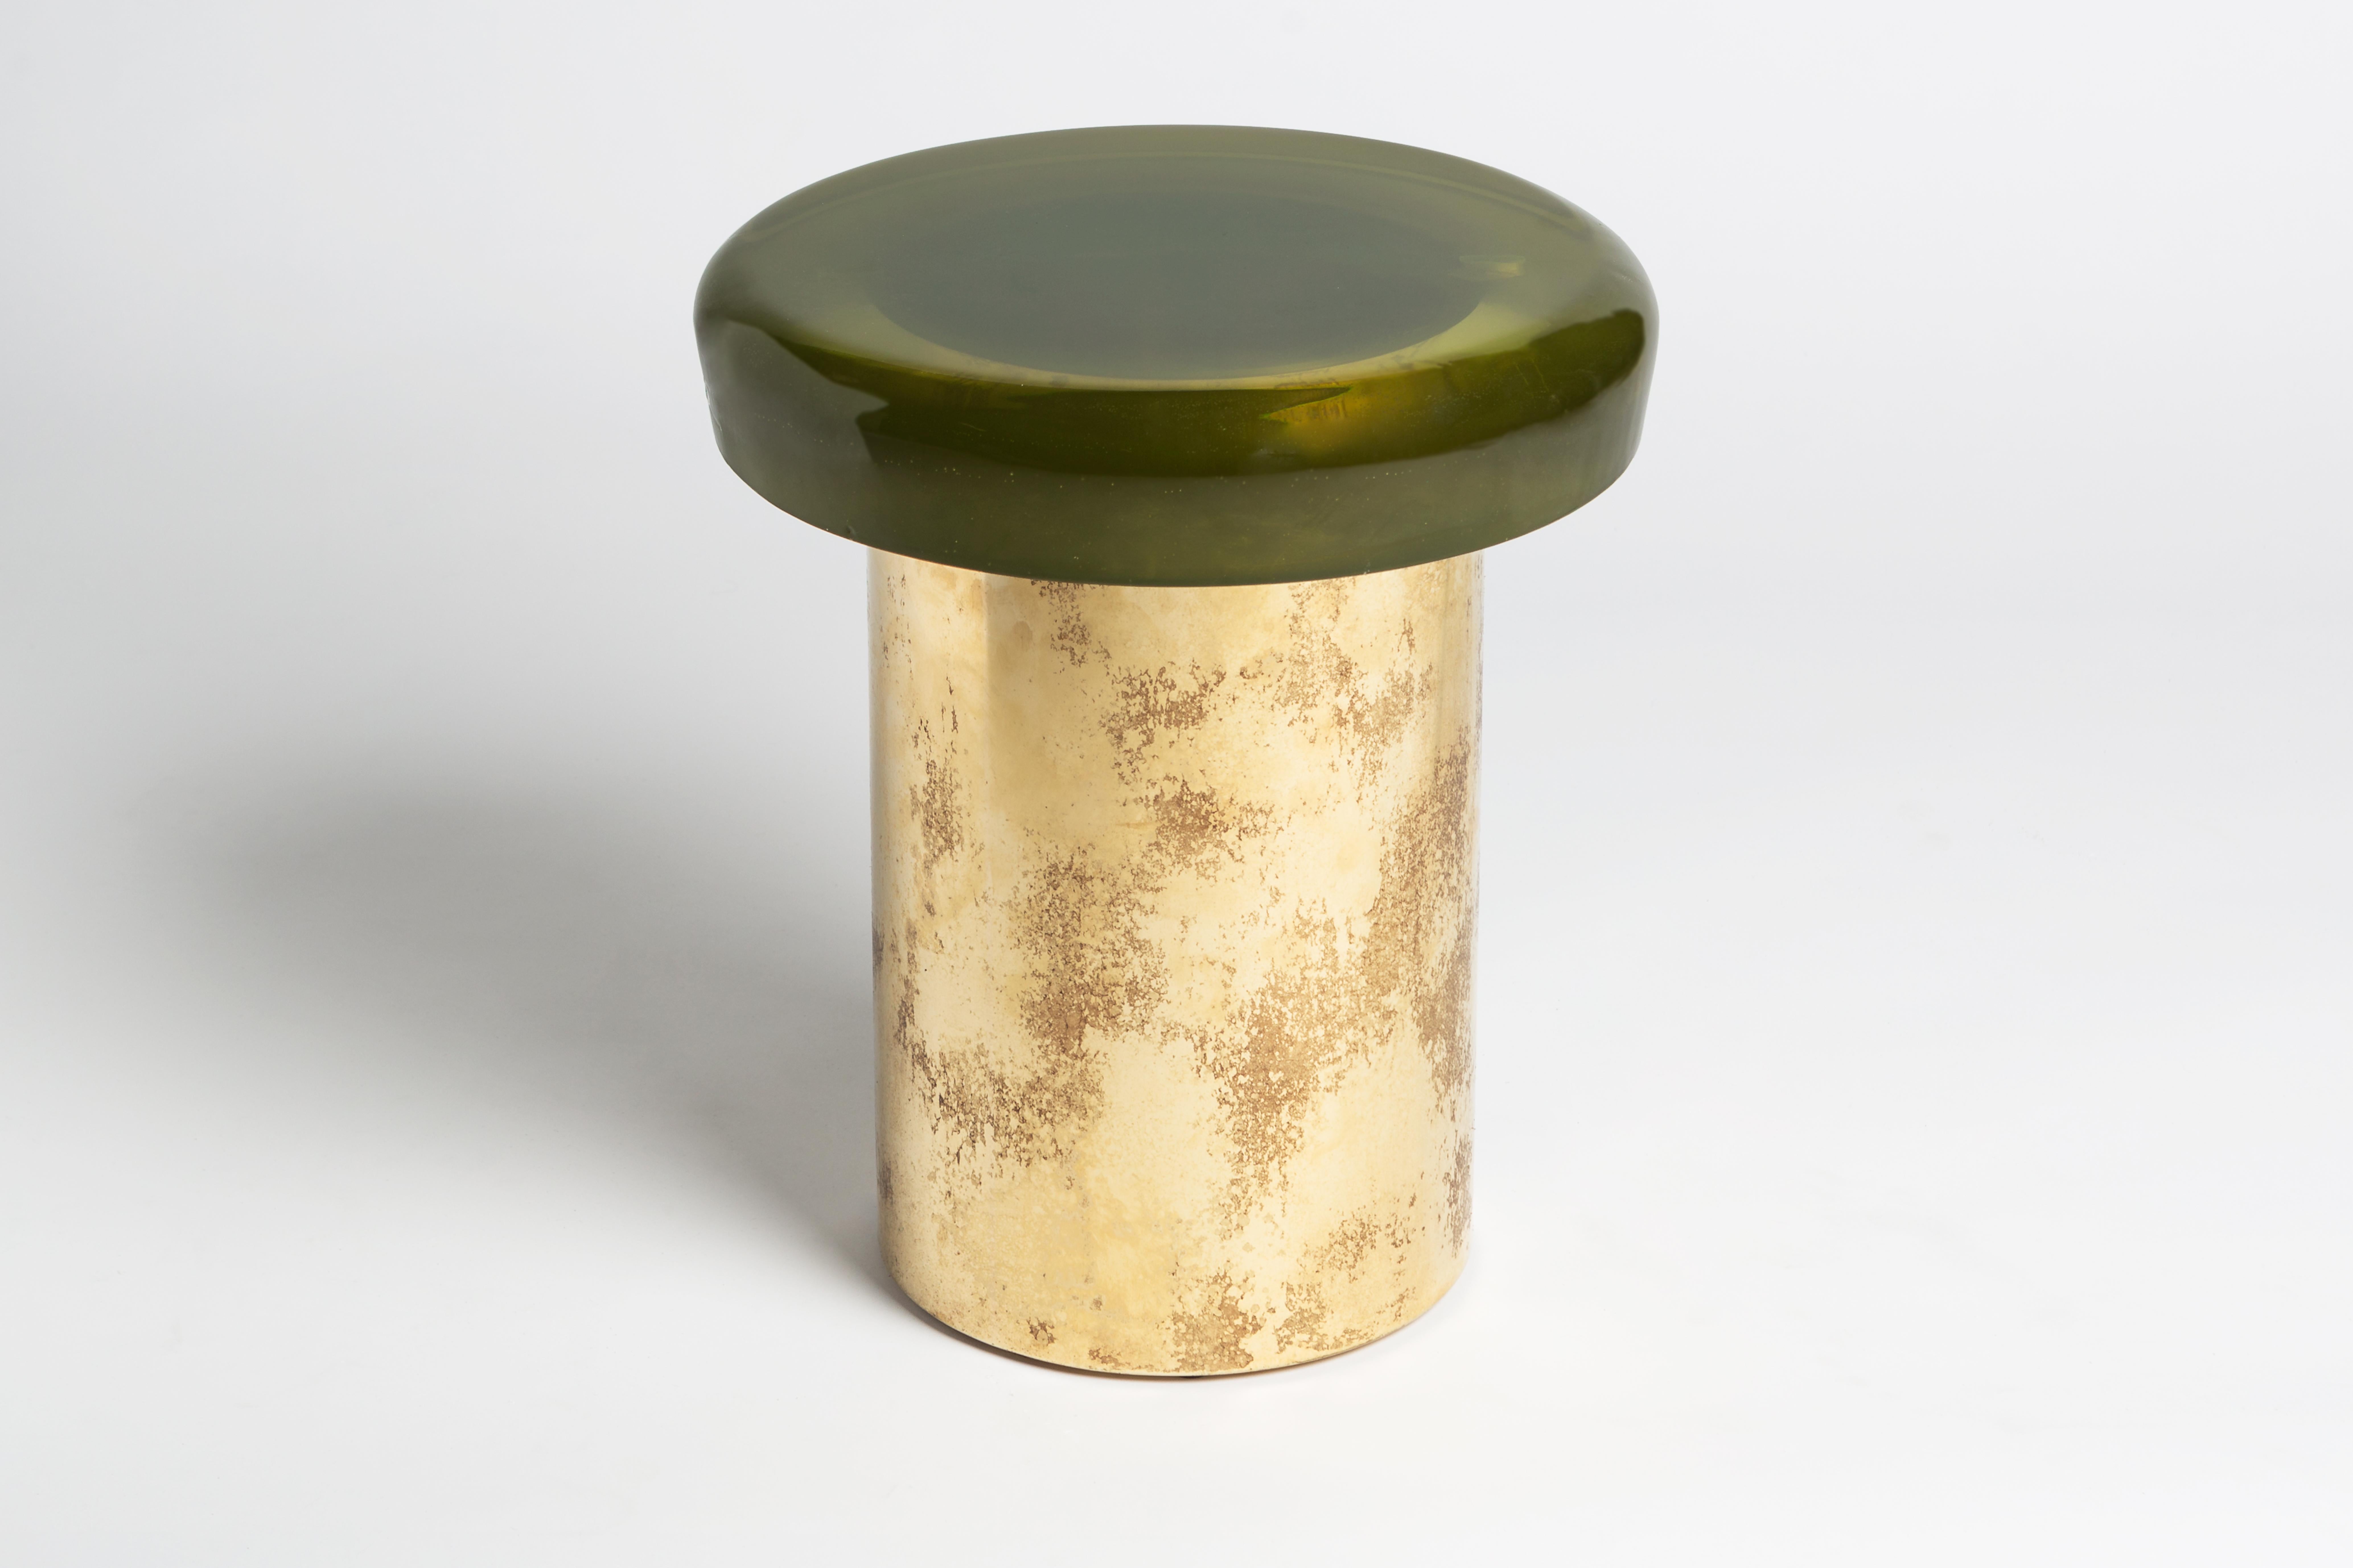 Sgabello Jade di Draga & Aurel
Dimensioni: L 40, P 40, H 46, Ø superiore 40 cm
Materiali: Resina e bronzo

Formati da una combinazione di resina riflettente e ottone massiccio, i tavolini Jade sembrano gemme preziose. La superficie è realizzata